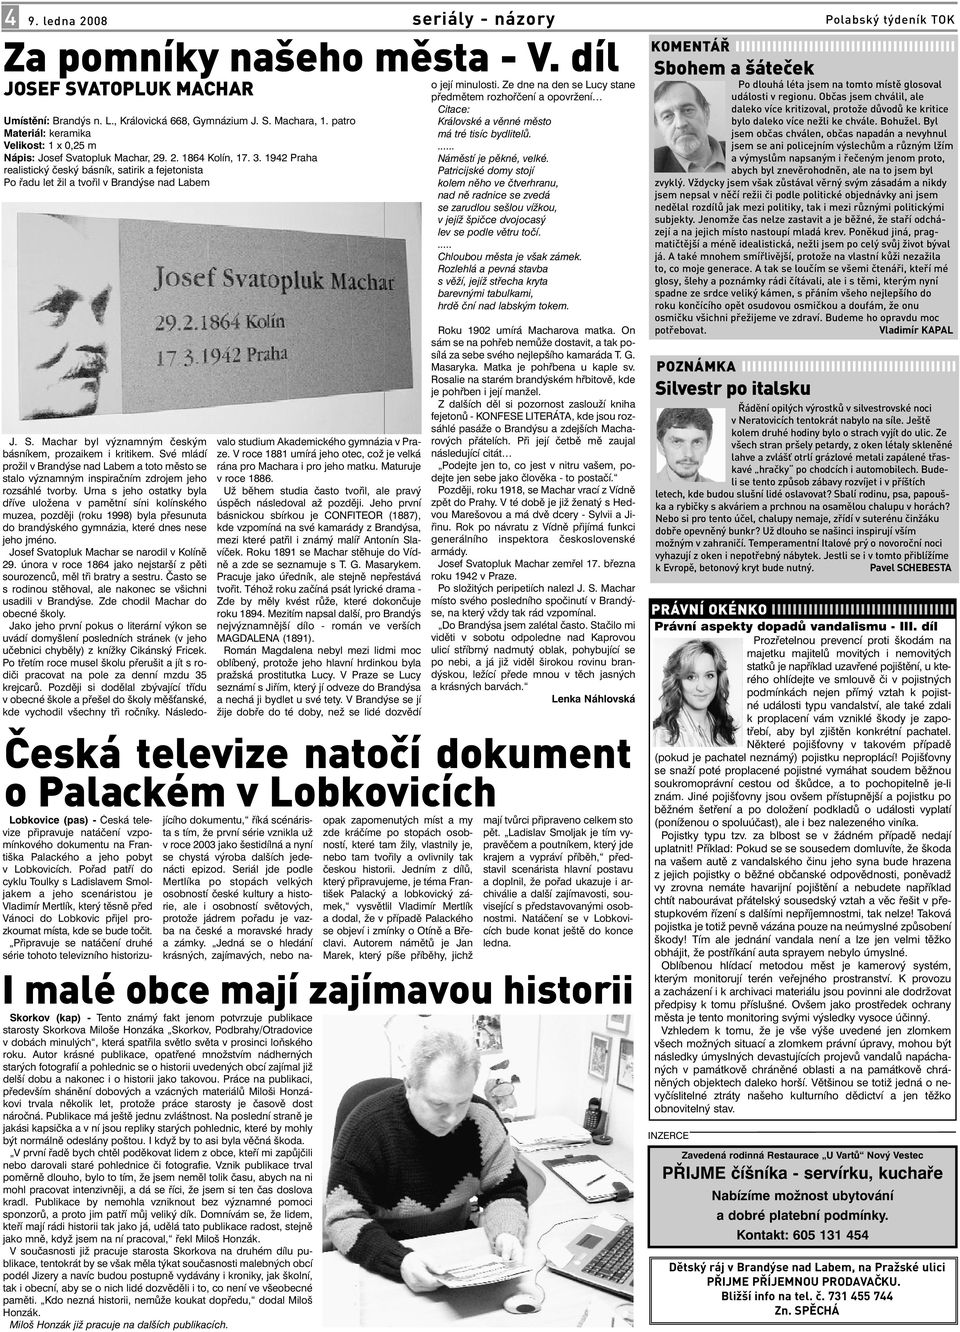 1942 Praha realistický český básník, satirik a fejetonista Po řadu let žil a tvořil v Brandýse nad Labem J. S. Machar byl významným českým básníkem, prozaikem i kritikem.